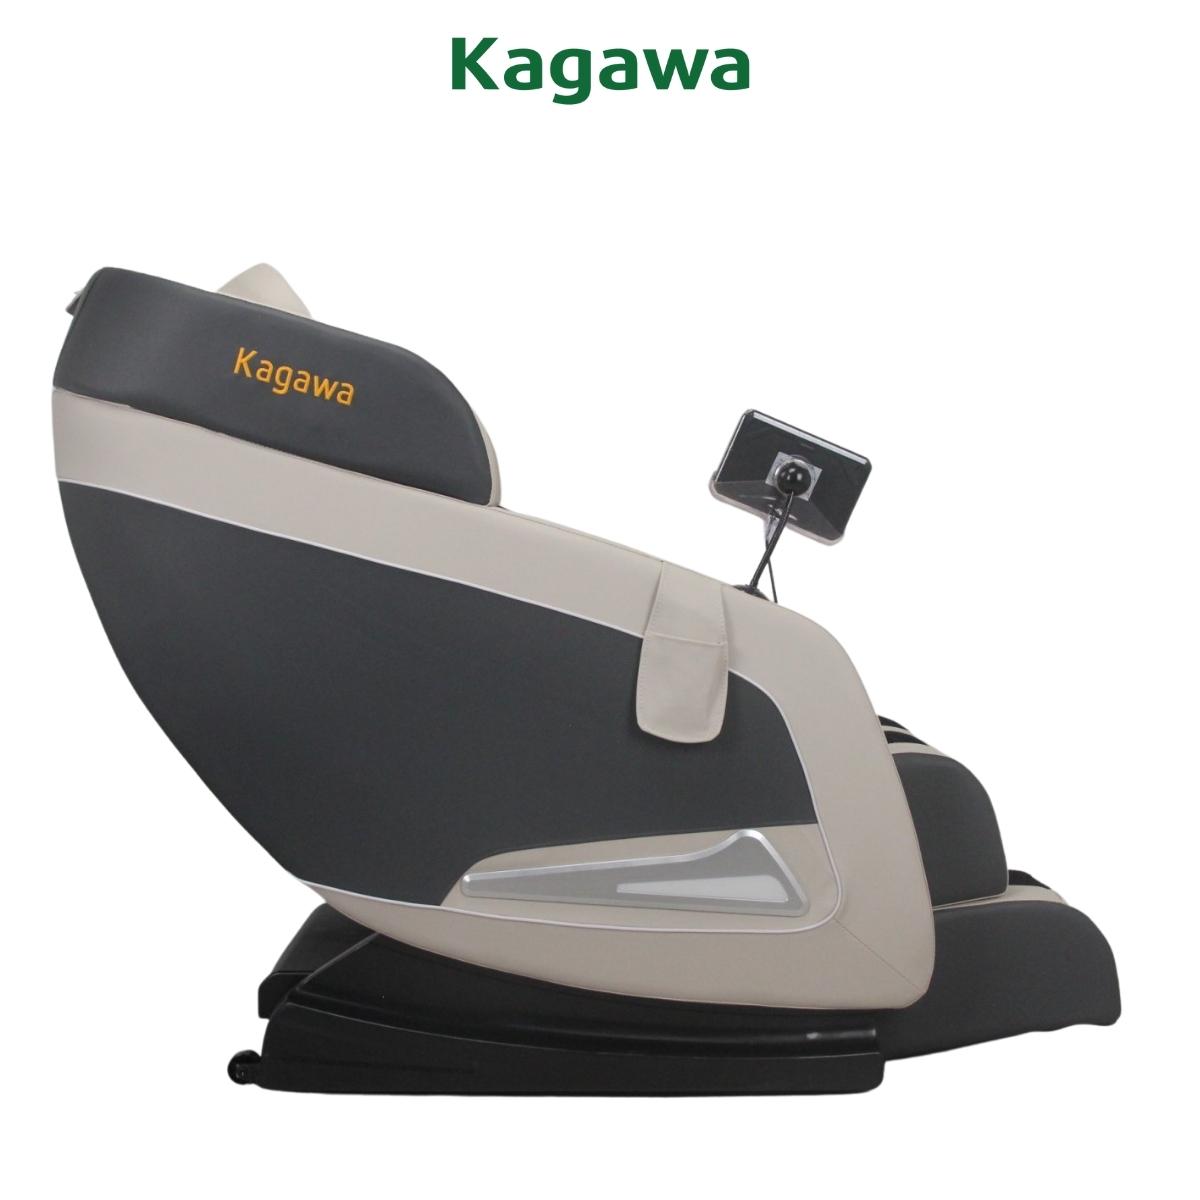 Ghế massage trị liệu toàn thân KAGAWA K28 [FULL QUÀ TẶNG] công nghệ mát xa nhiệt hồng ngoại tân tiến giúp thư giãn, giảm stress tại nhà